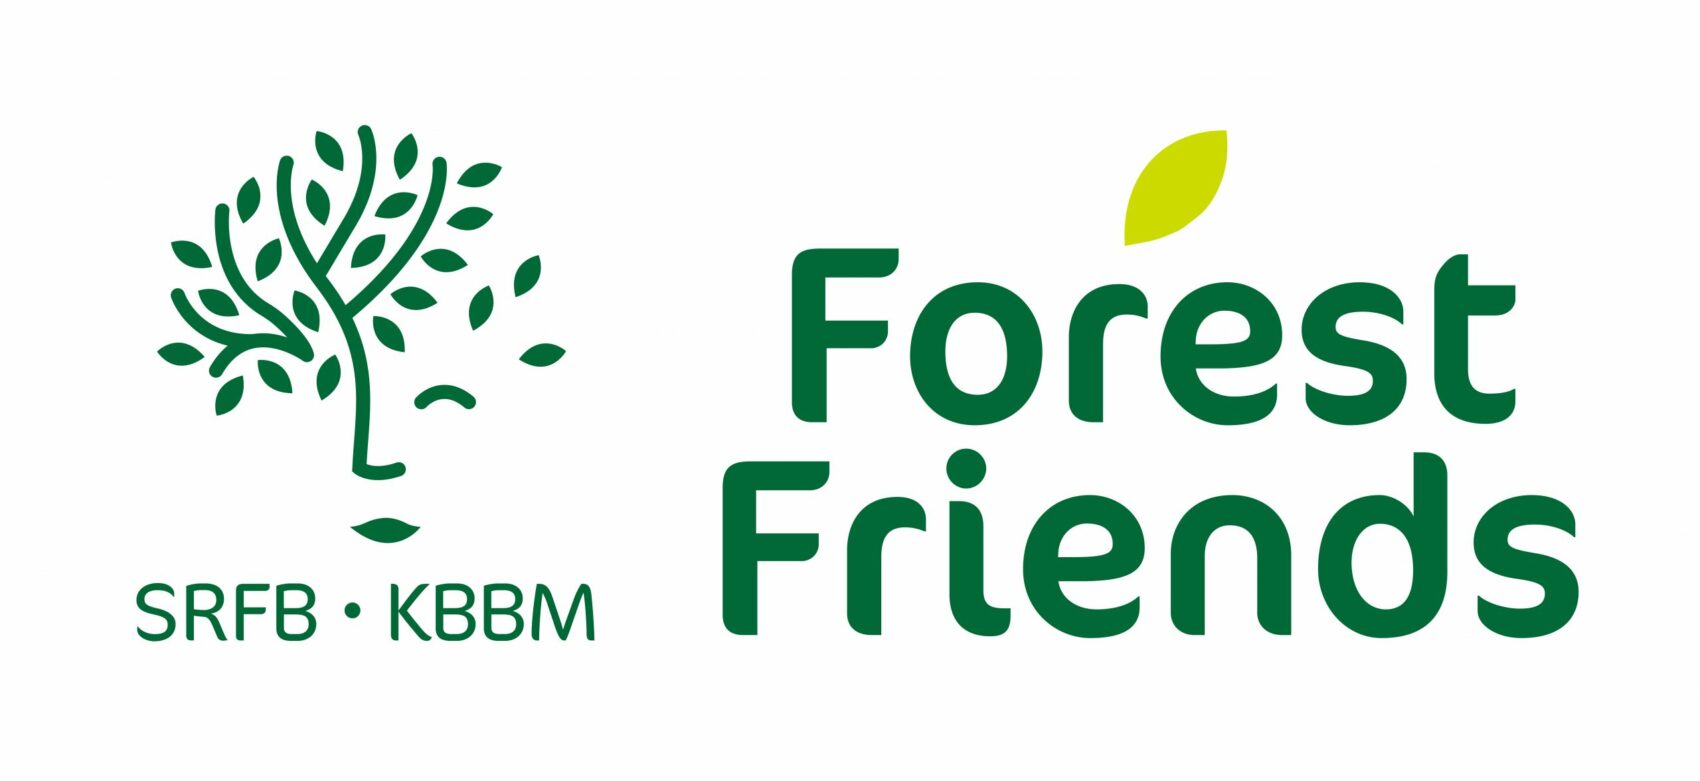 Initiation à la forêt et à la foresterie